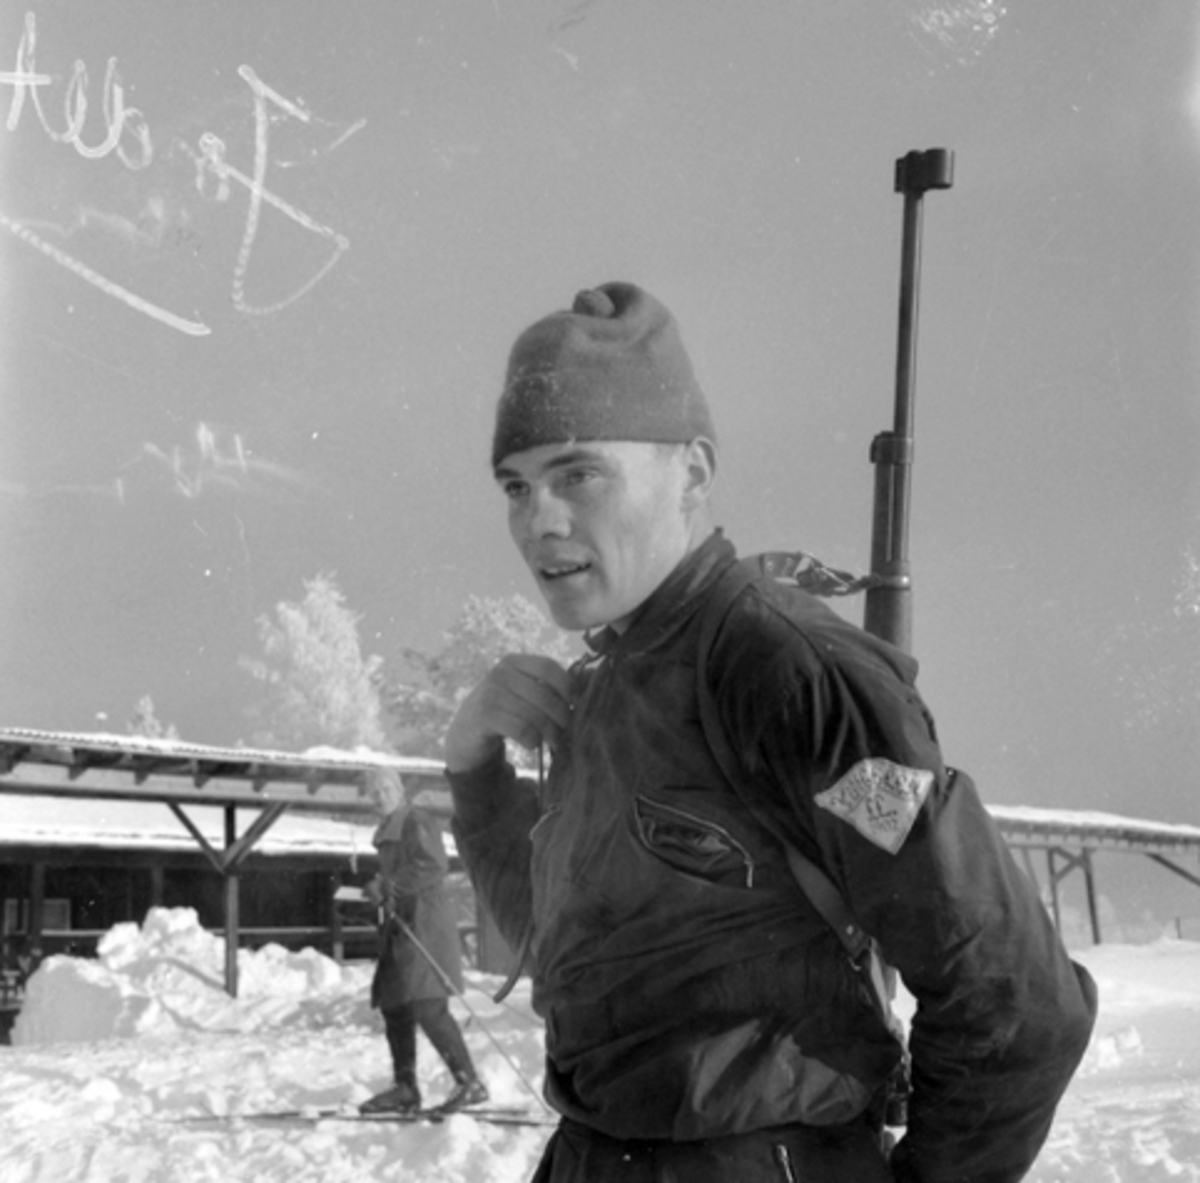 Olav Jordet, skiskyting.